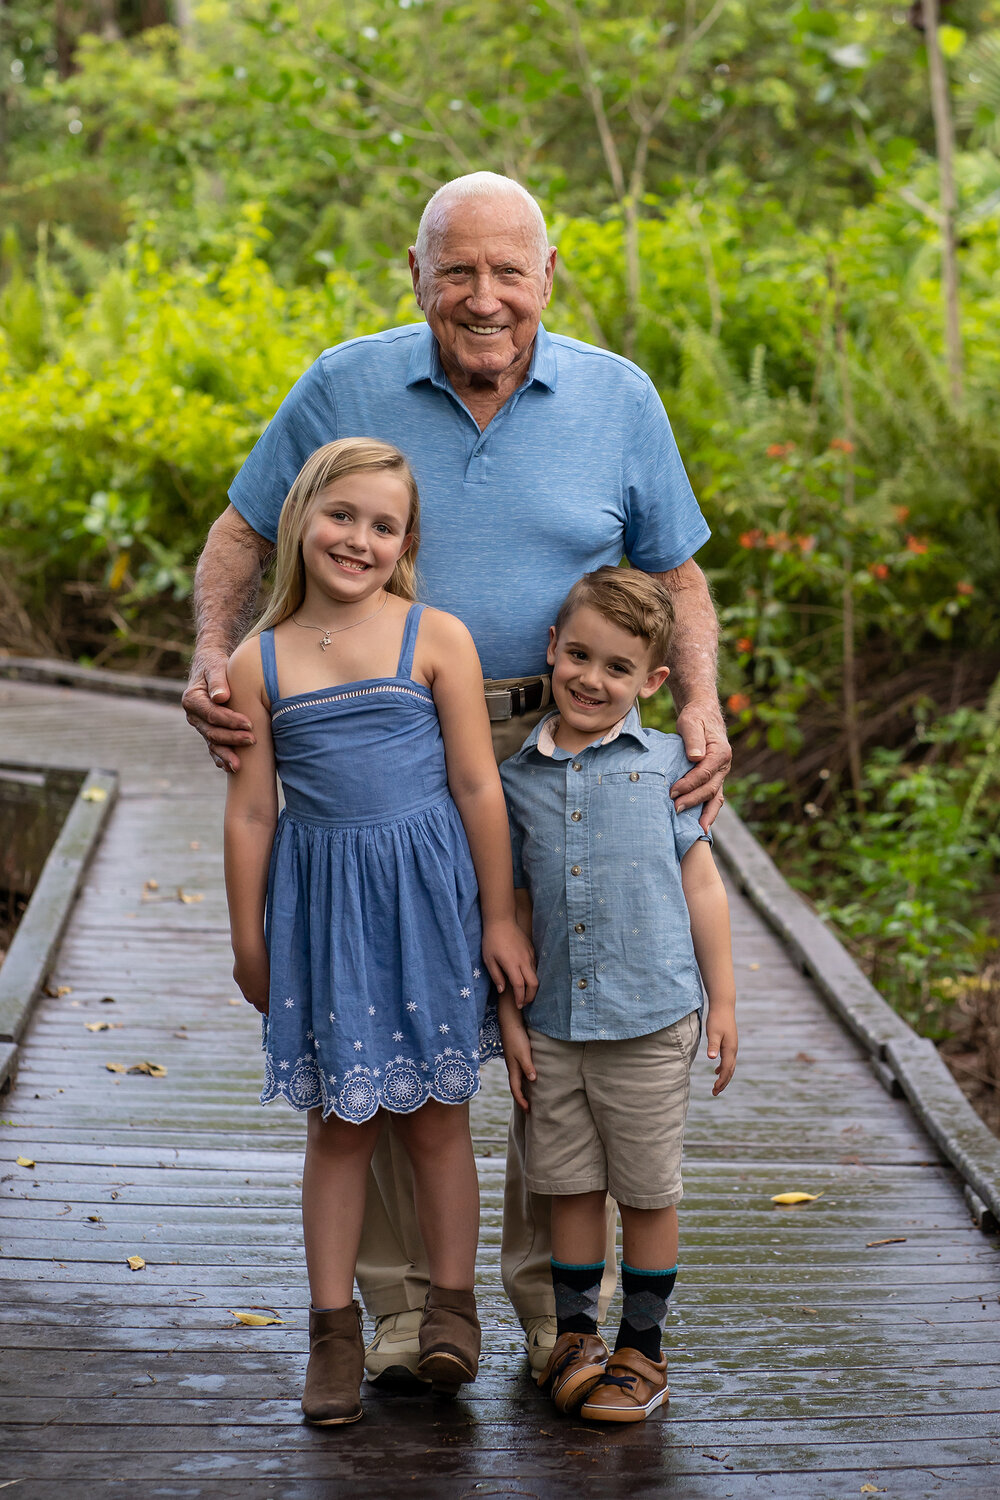 Great-grandpa + Grandchildren